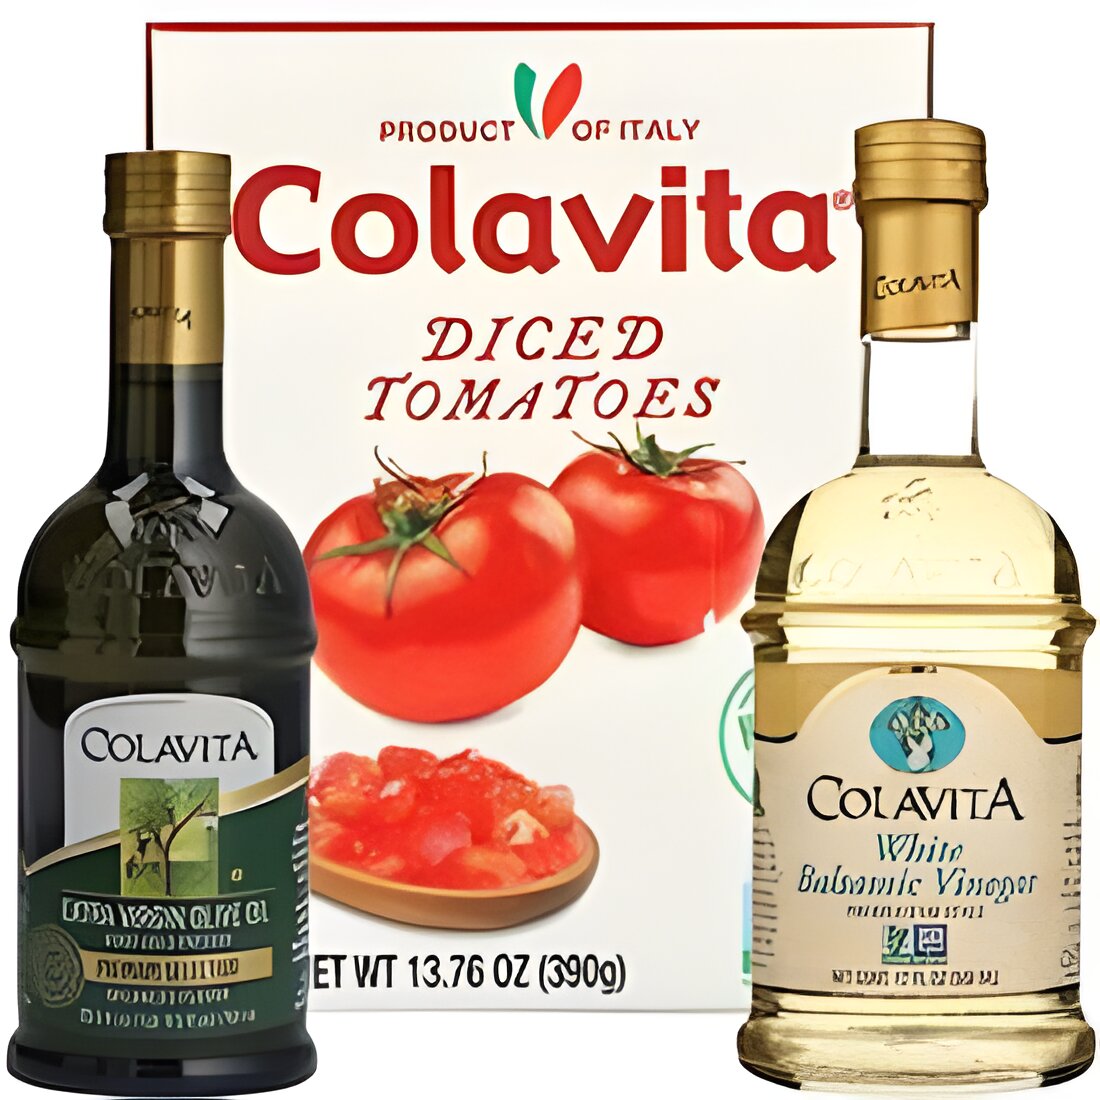 Free Colavita Olive Oil, Pasta or Vinegar